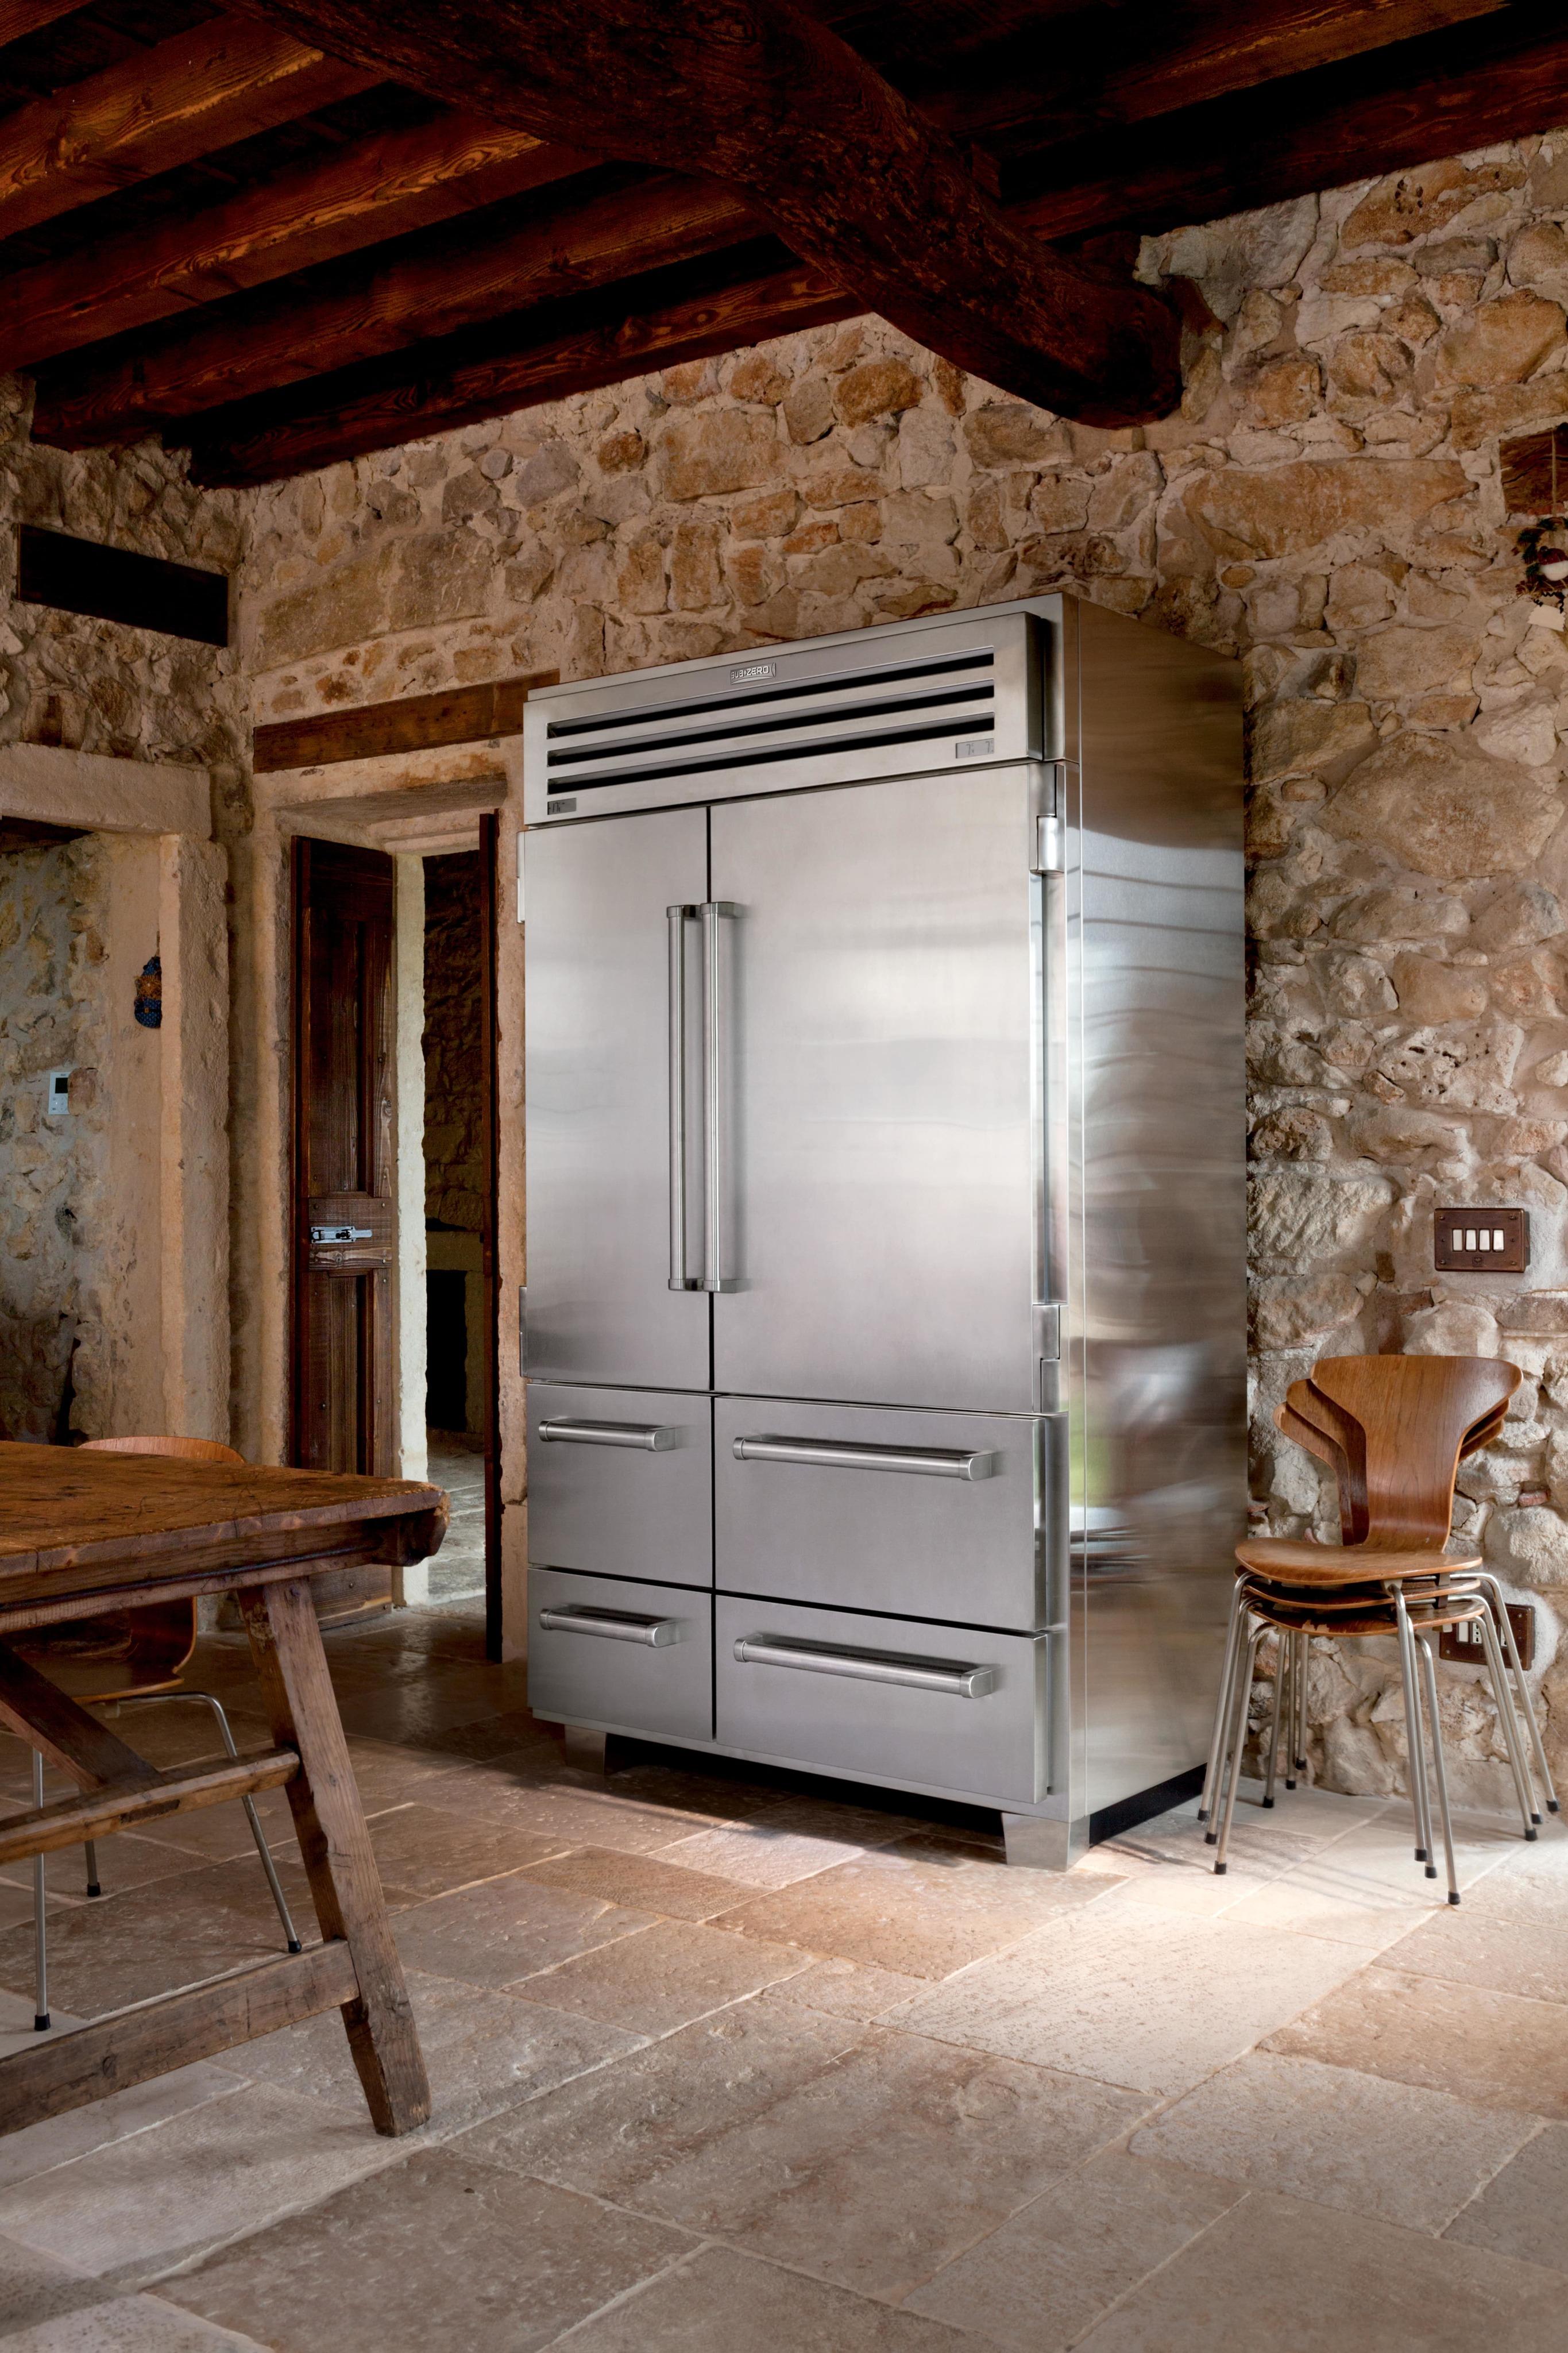 SubZero Pro-48-Kühlgerät #küche #luxus #kühlschrank ©SubZero